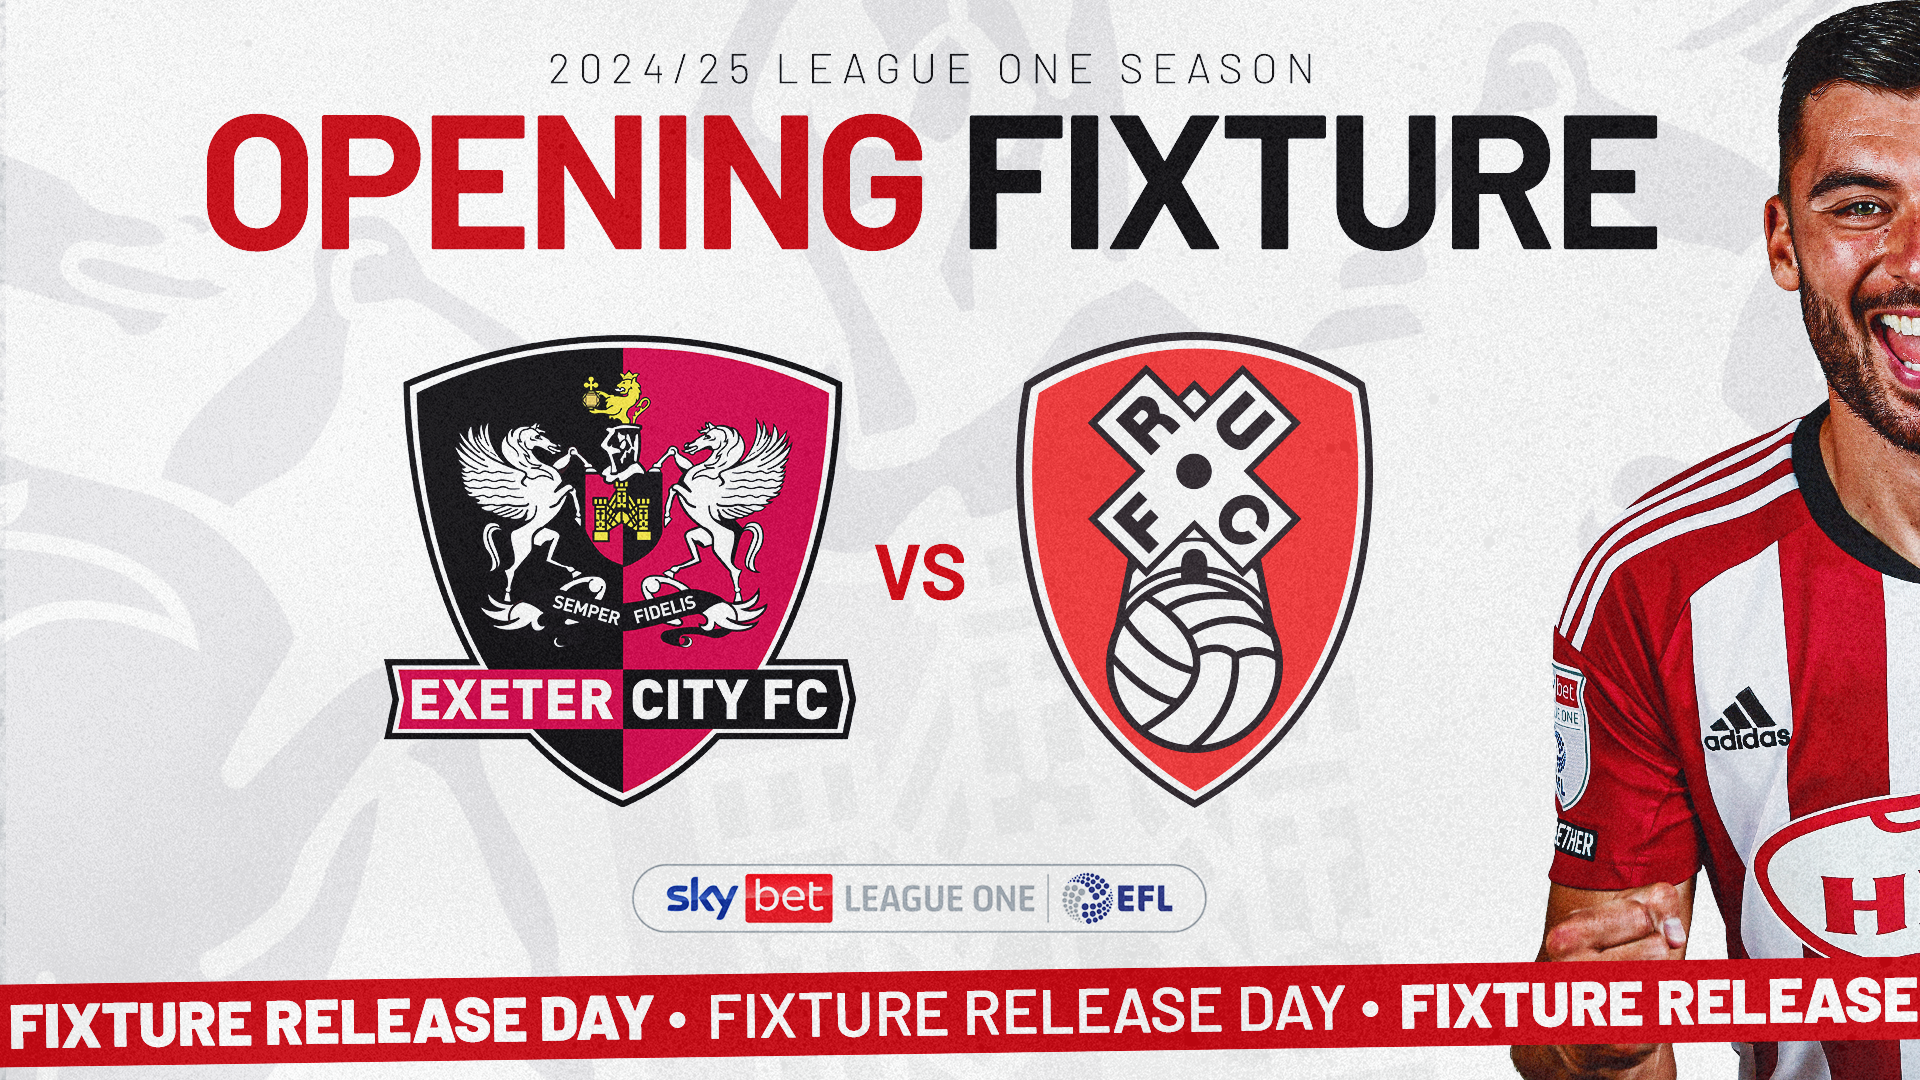 Exeter city v Rotherham United opening fixture image